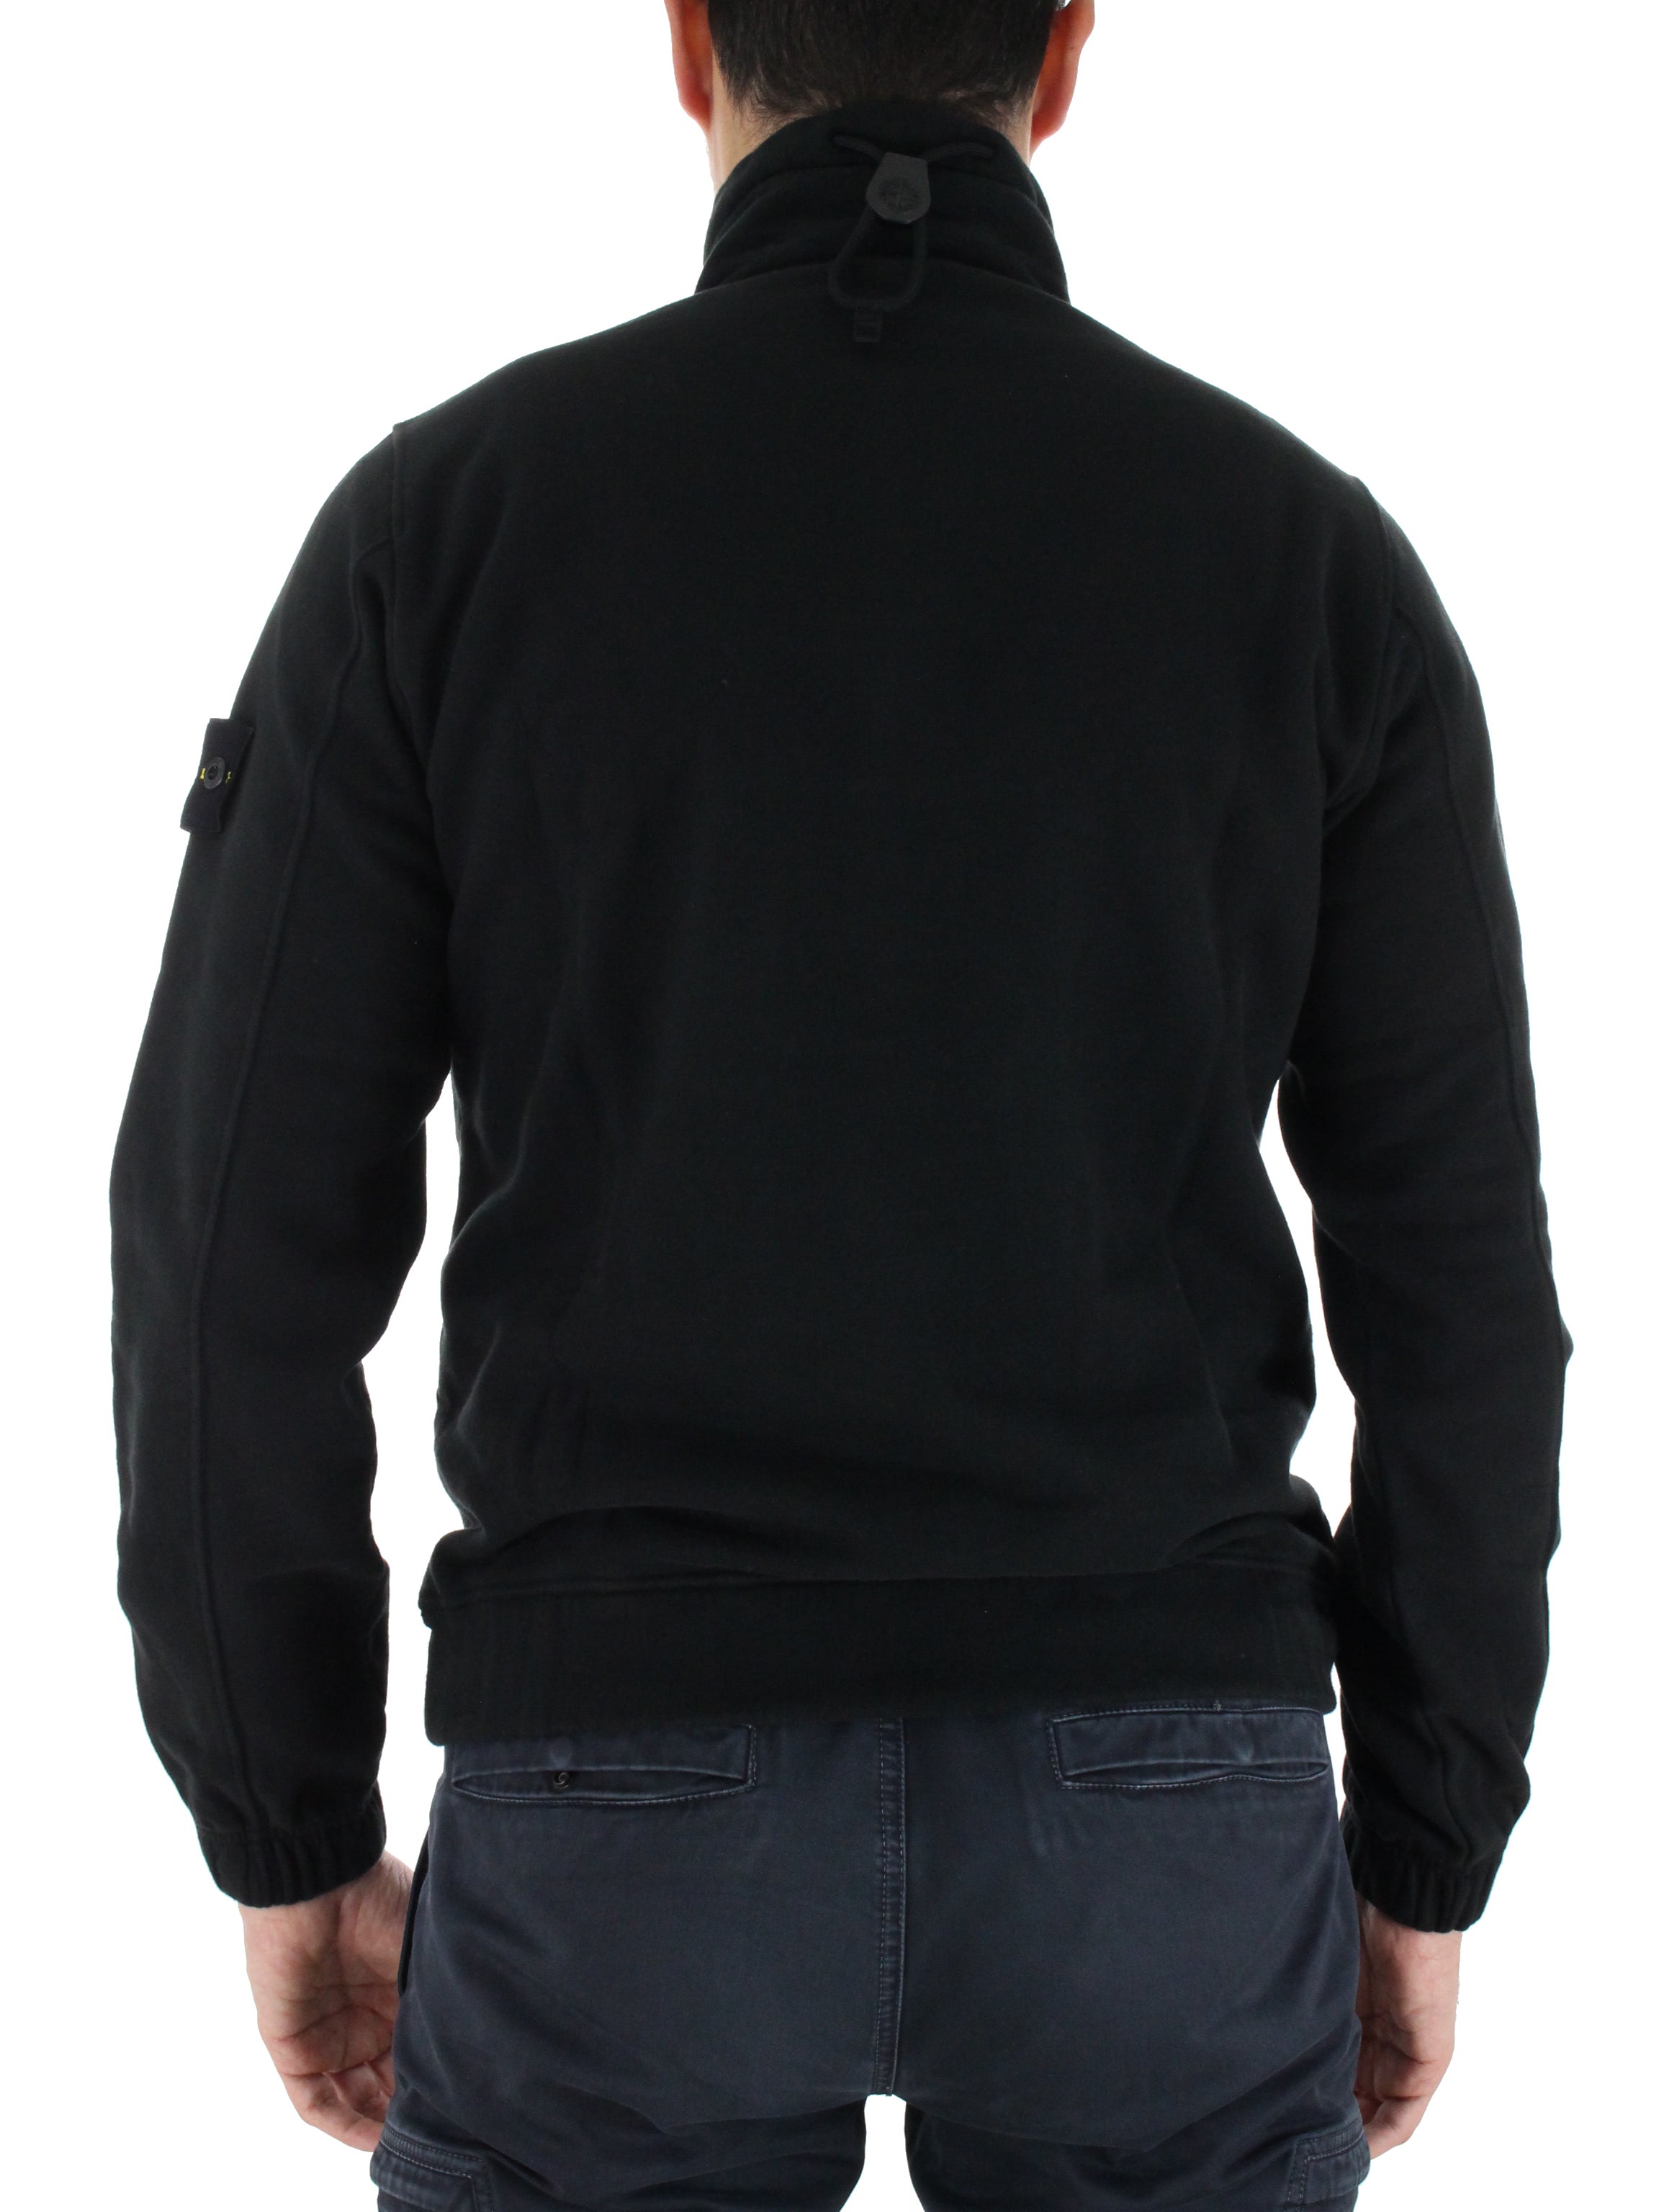 Zip Sweatshirt 731561520 black